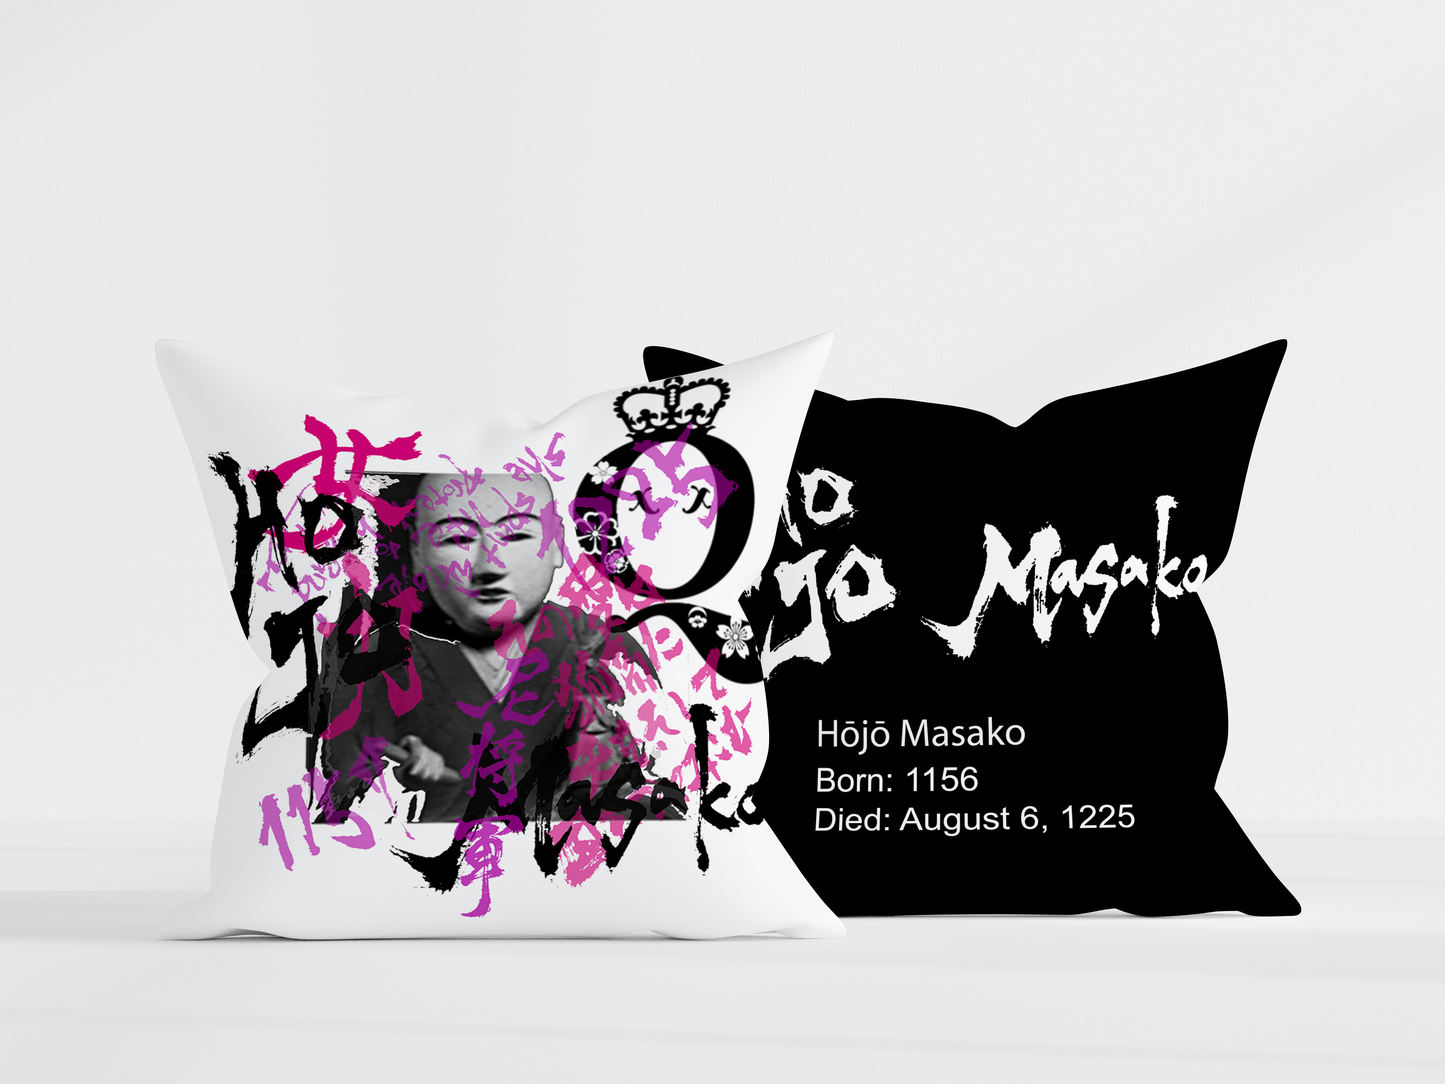 Hojo Masako Pillow Cover - Black Back - 18x18